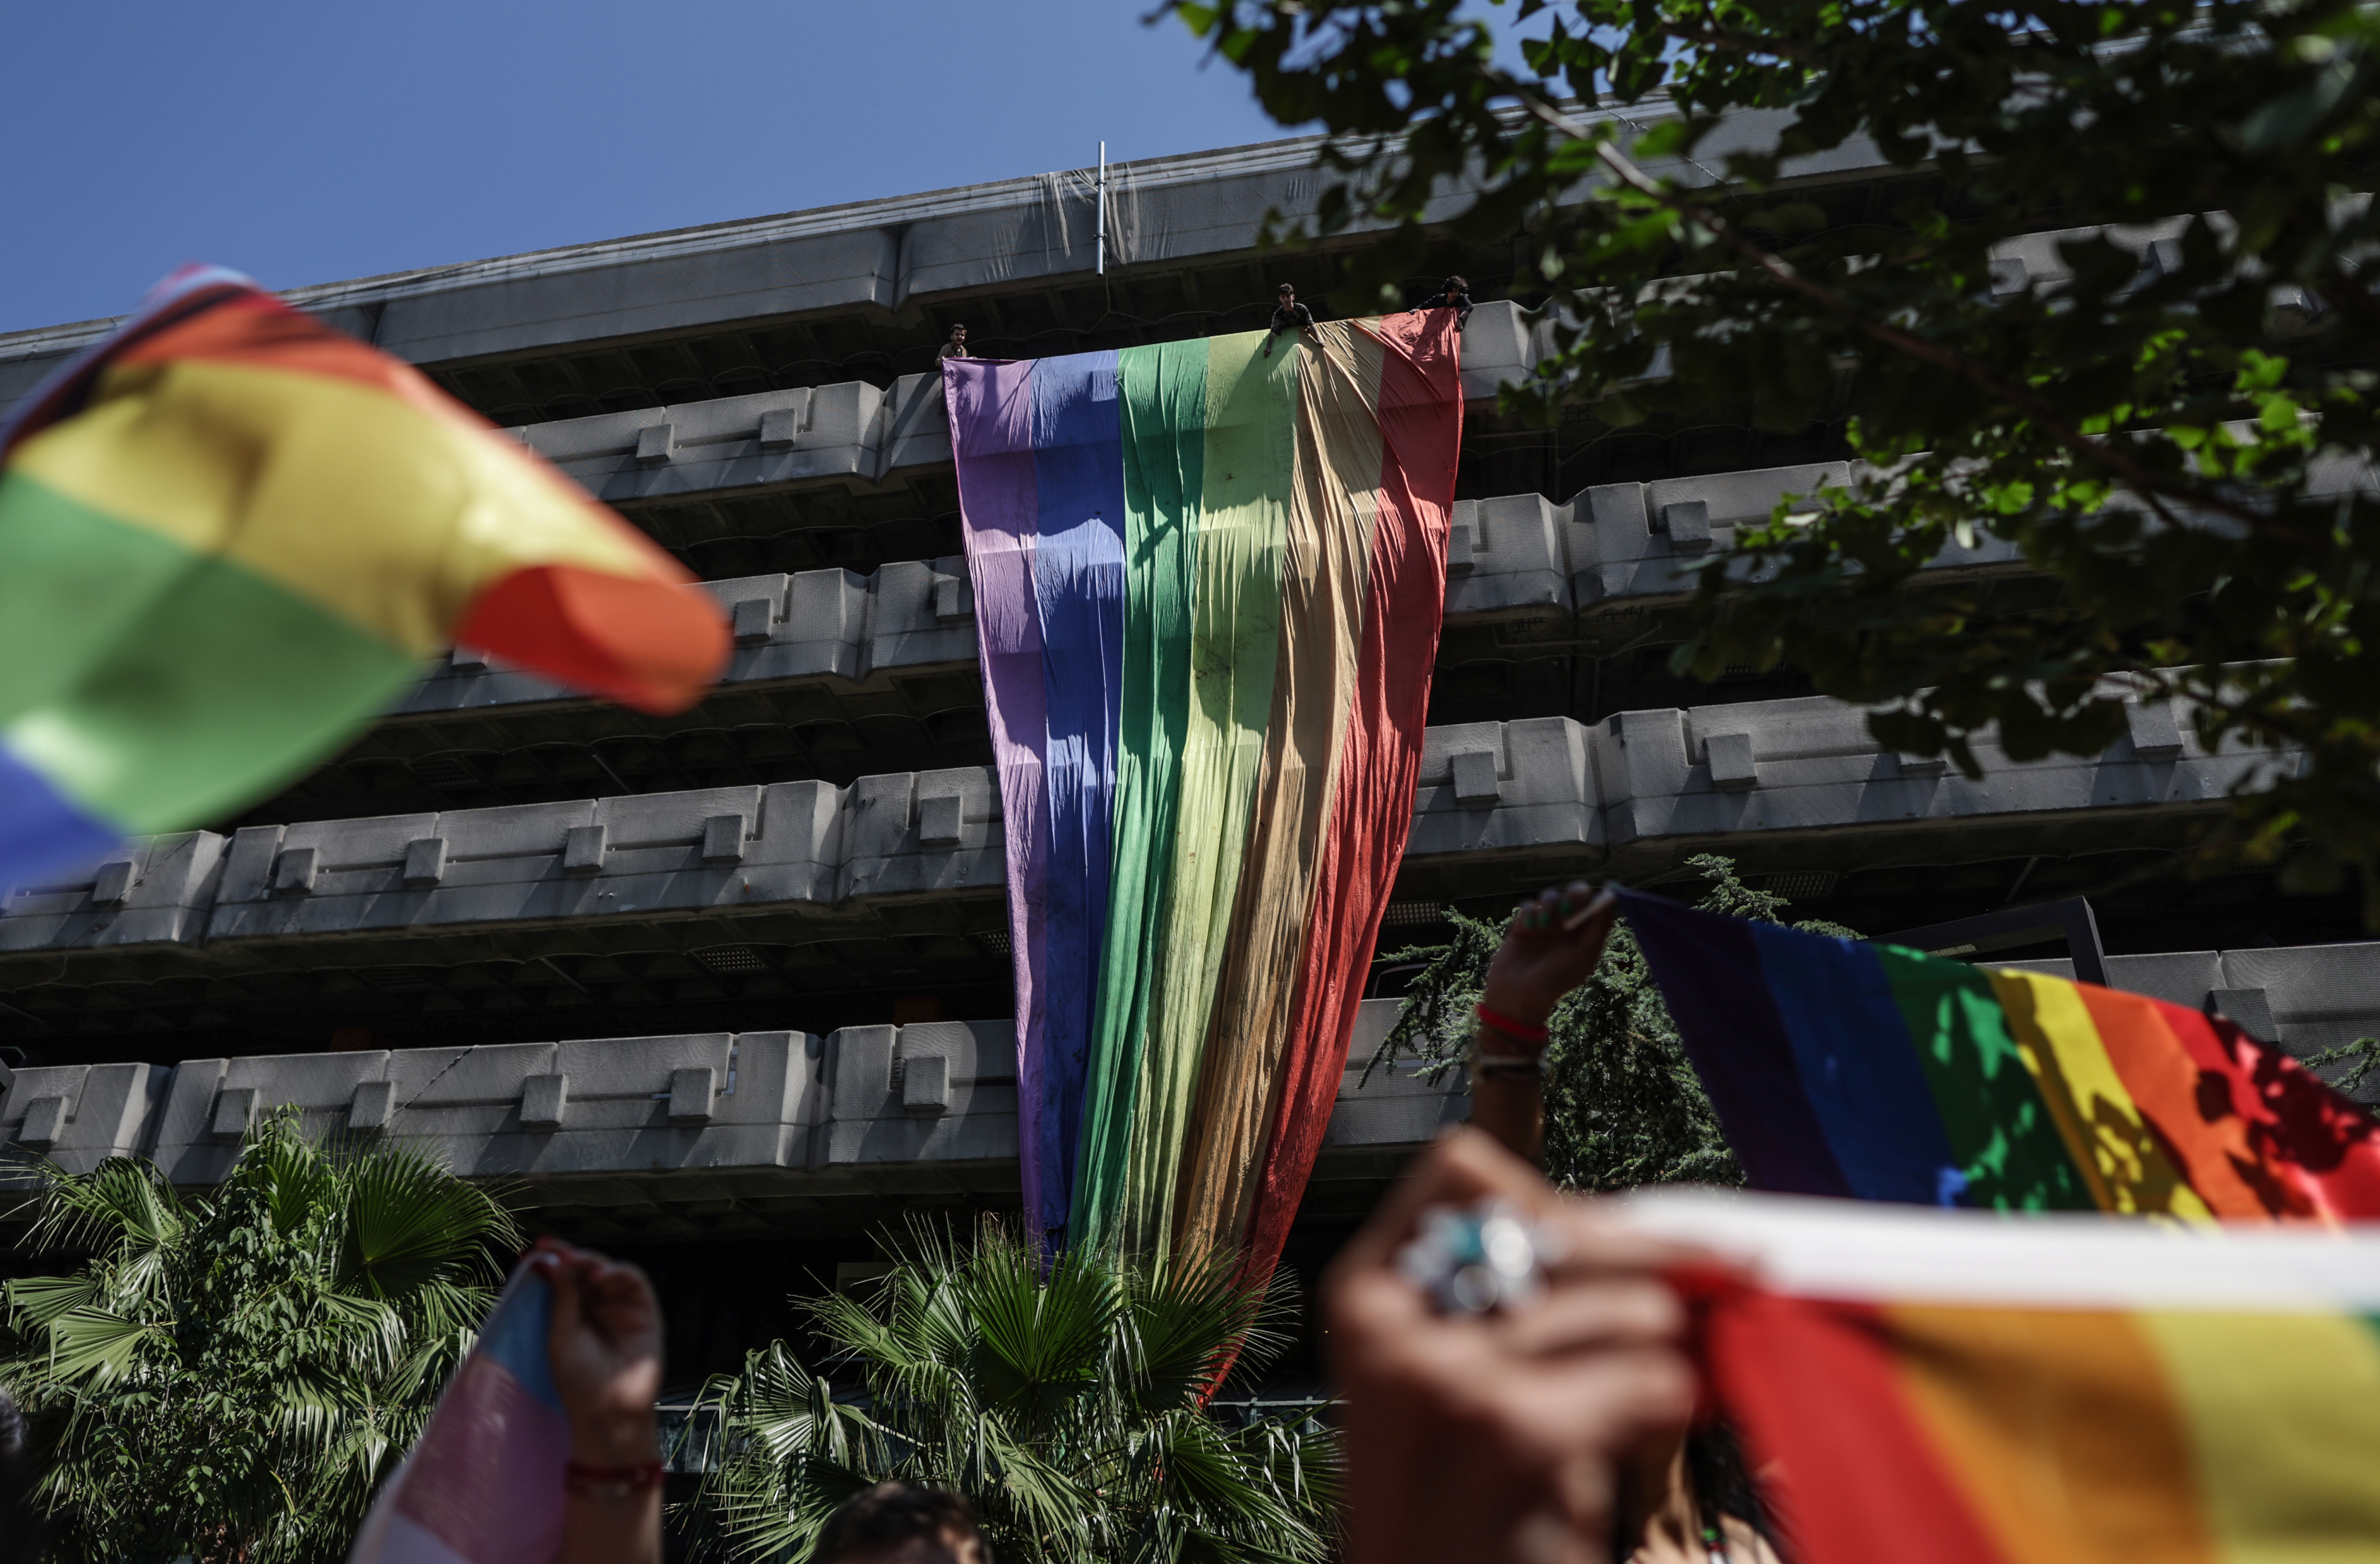 “Onur Yürüyüşleri döneminde en az 224 kişi keyfi olarak gözaltına alındı” | Kaos GL - LGBTİ+ Haber Portalı Haber